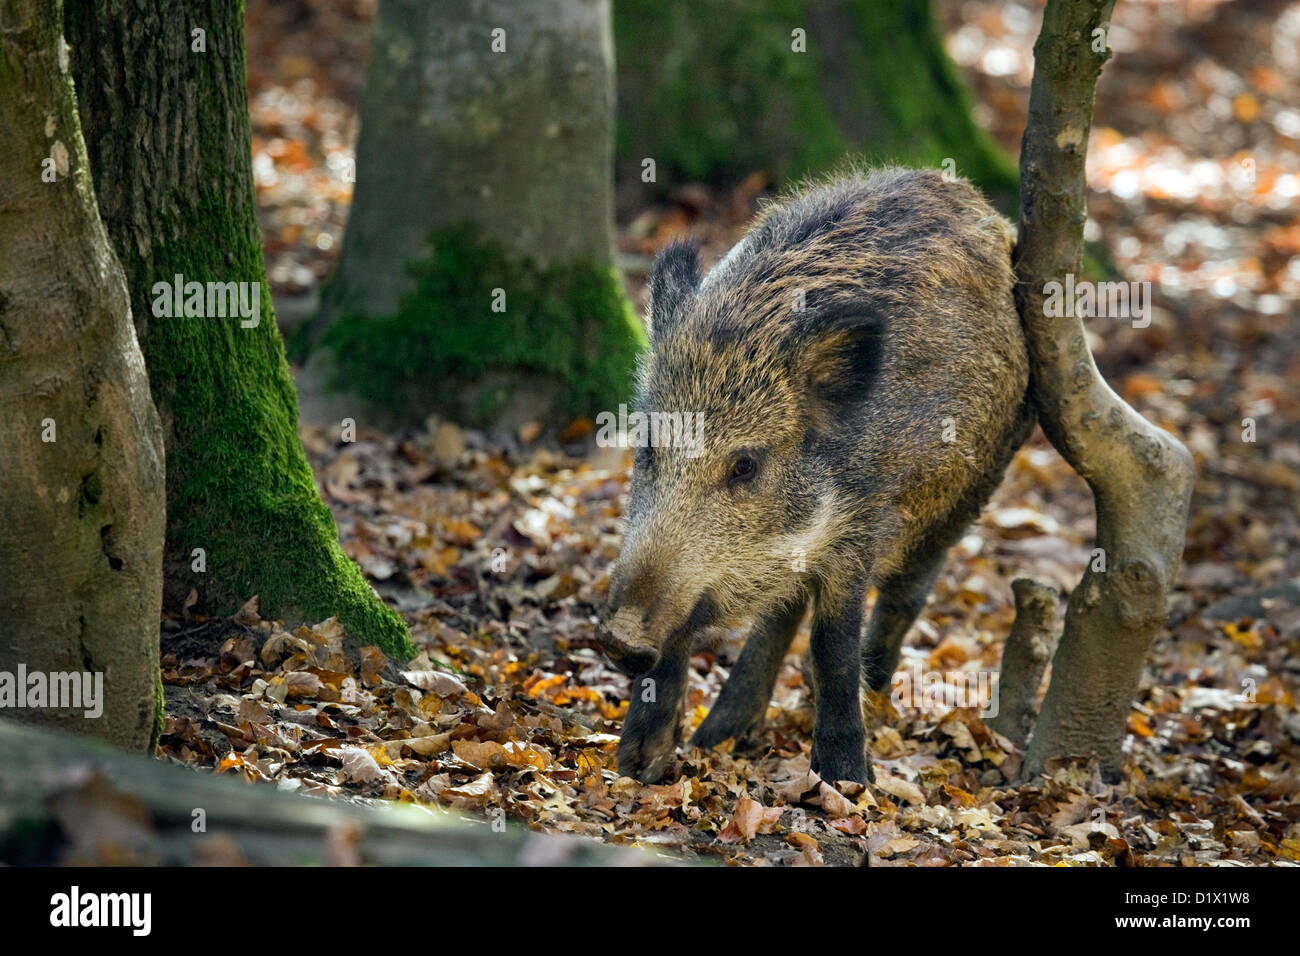 Le sanglier (Sus scrofa) fourrure rayures juvénile contre l'arbre en forêt d'automne dans les Ardennes Belges, Belgique Banque D'Images